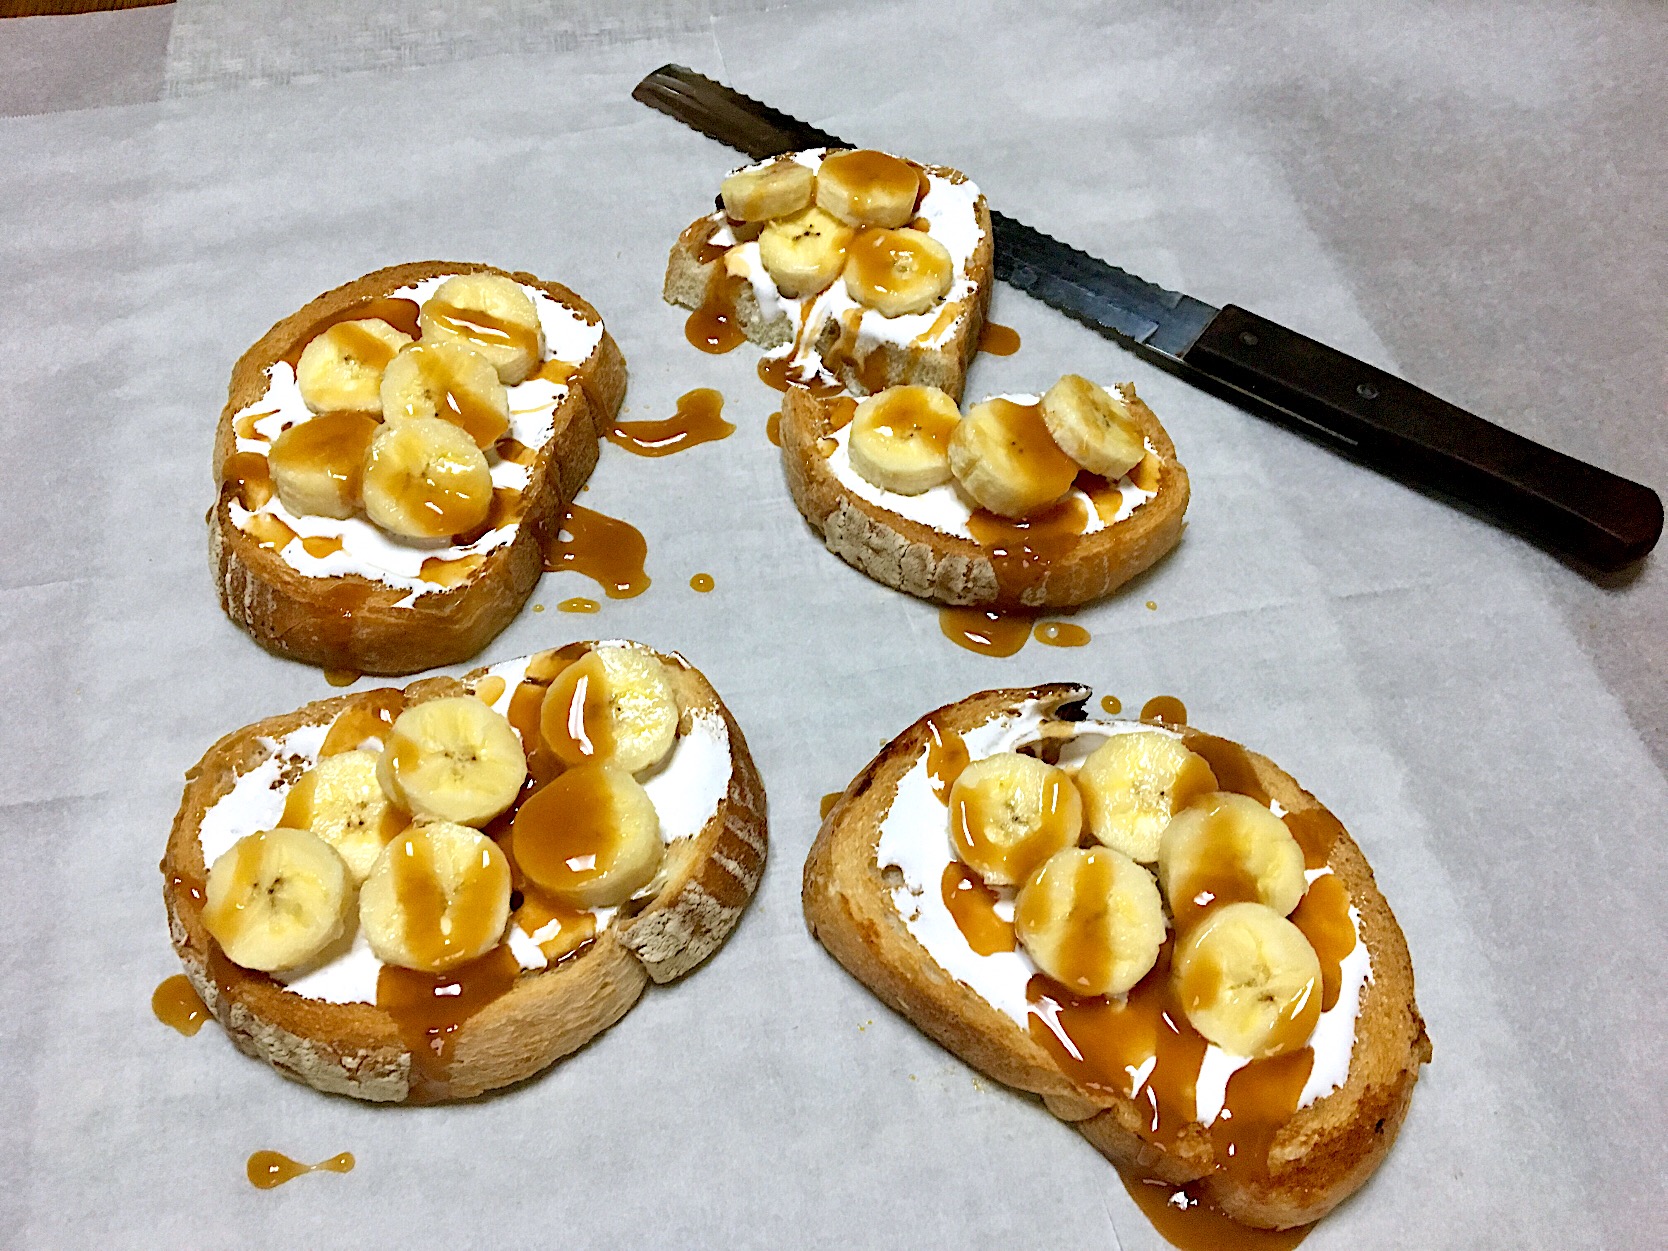 ✨Banana toast with marshmallow fluff ,caramel syrup & walnuts...バナナトースト?✨